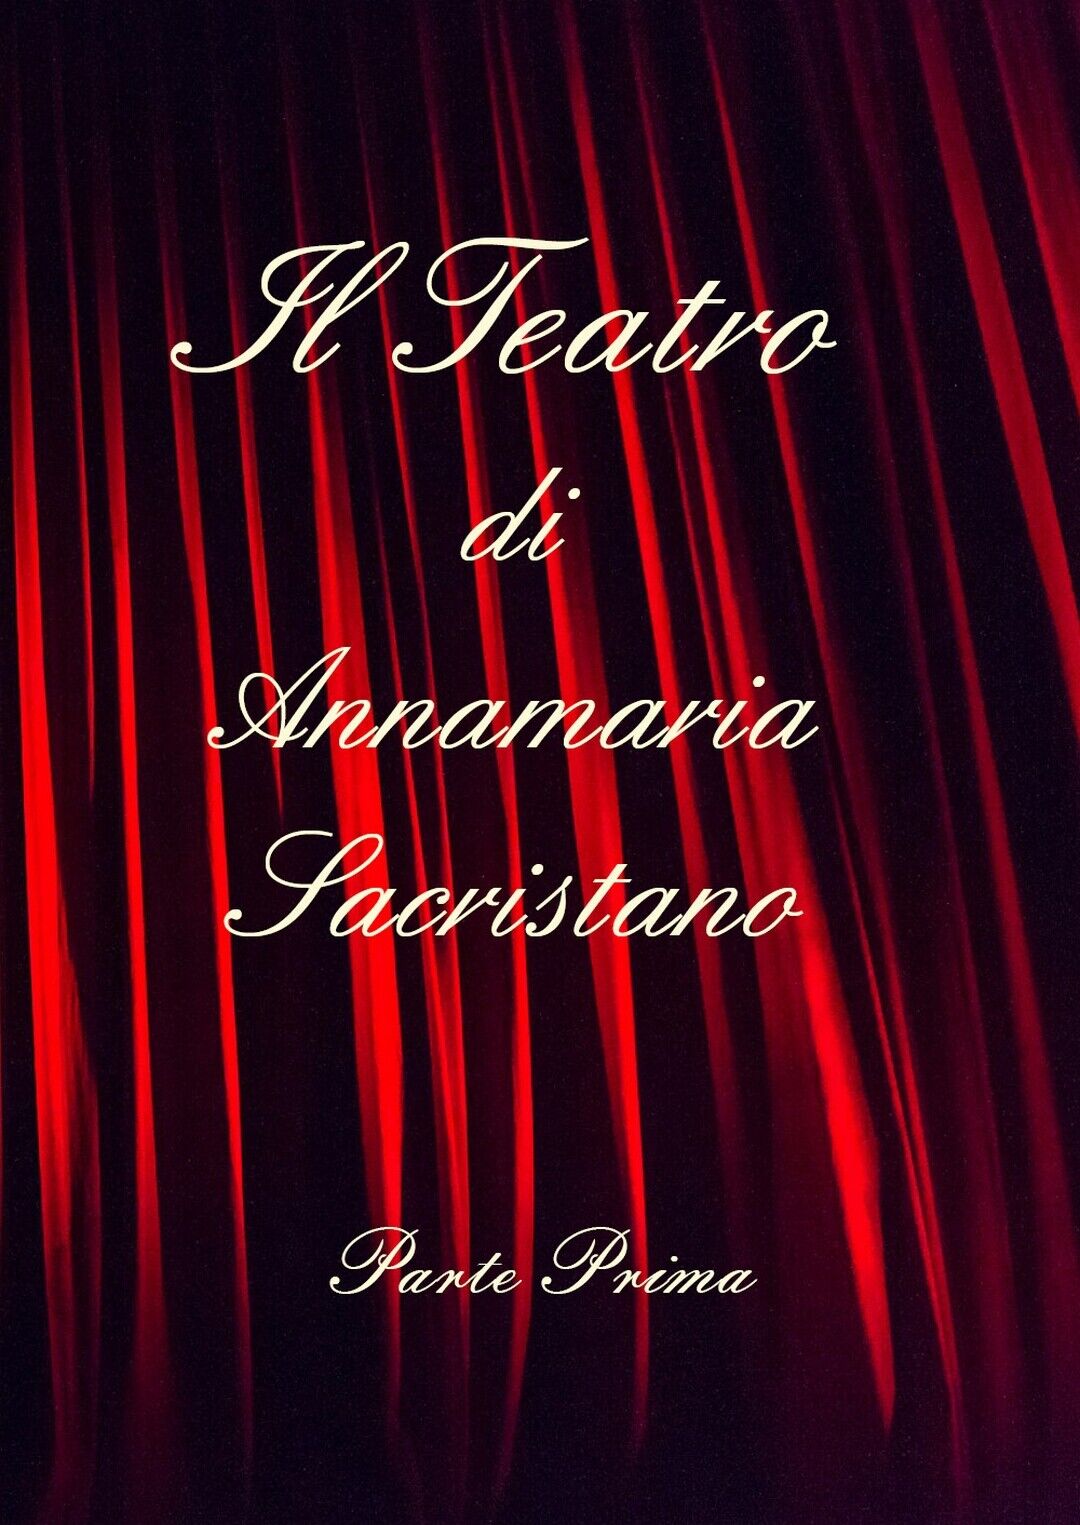 Il teatro di Annamaria Sacristano - Parte prima  di Annamaria Sacristano,  2019 libro usato